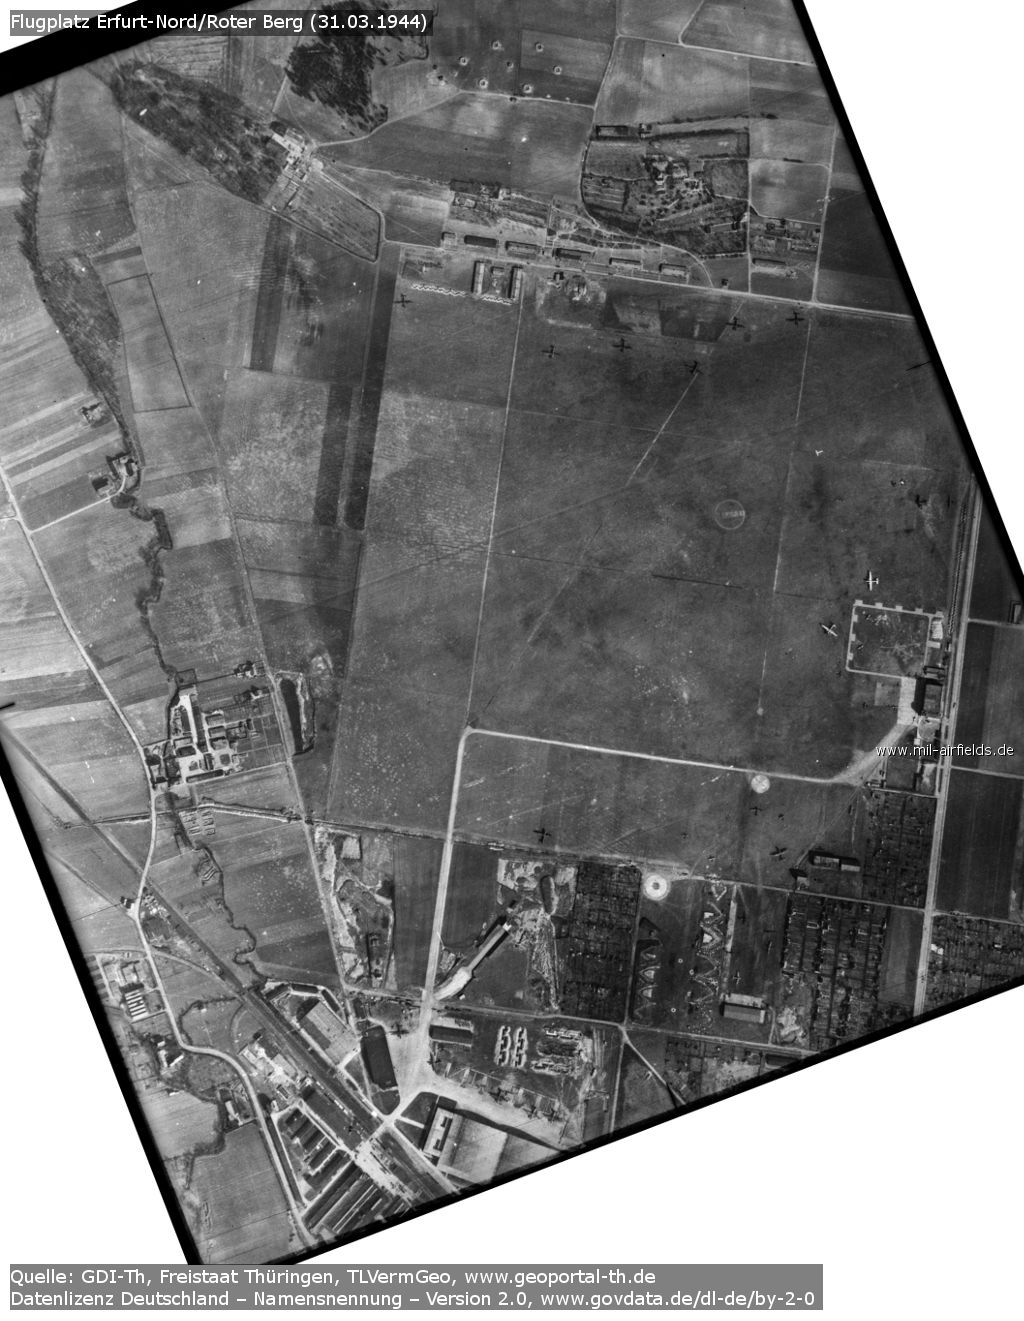 Luftbild vom 31.03.1944